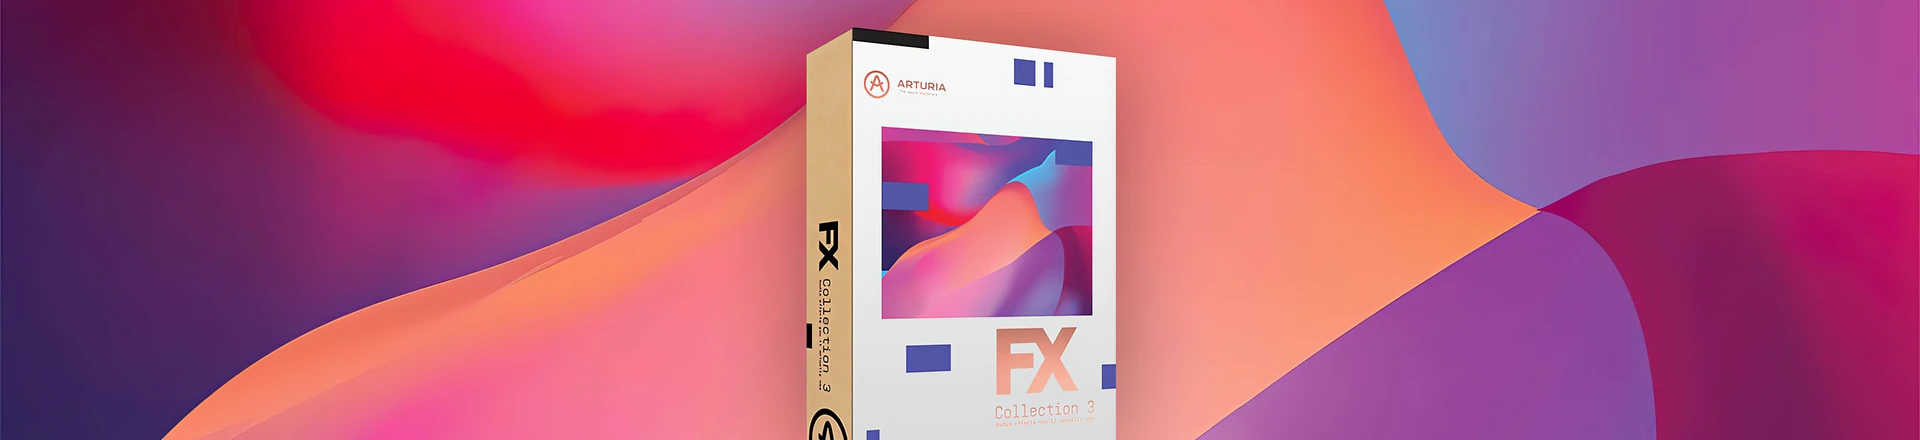 FX Collection 3 - Arturia dodaje klasyczne zniekształcenia oraz efekty granularne i lo-fi